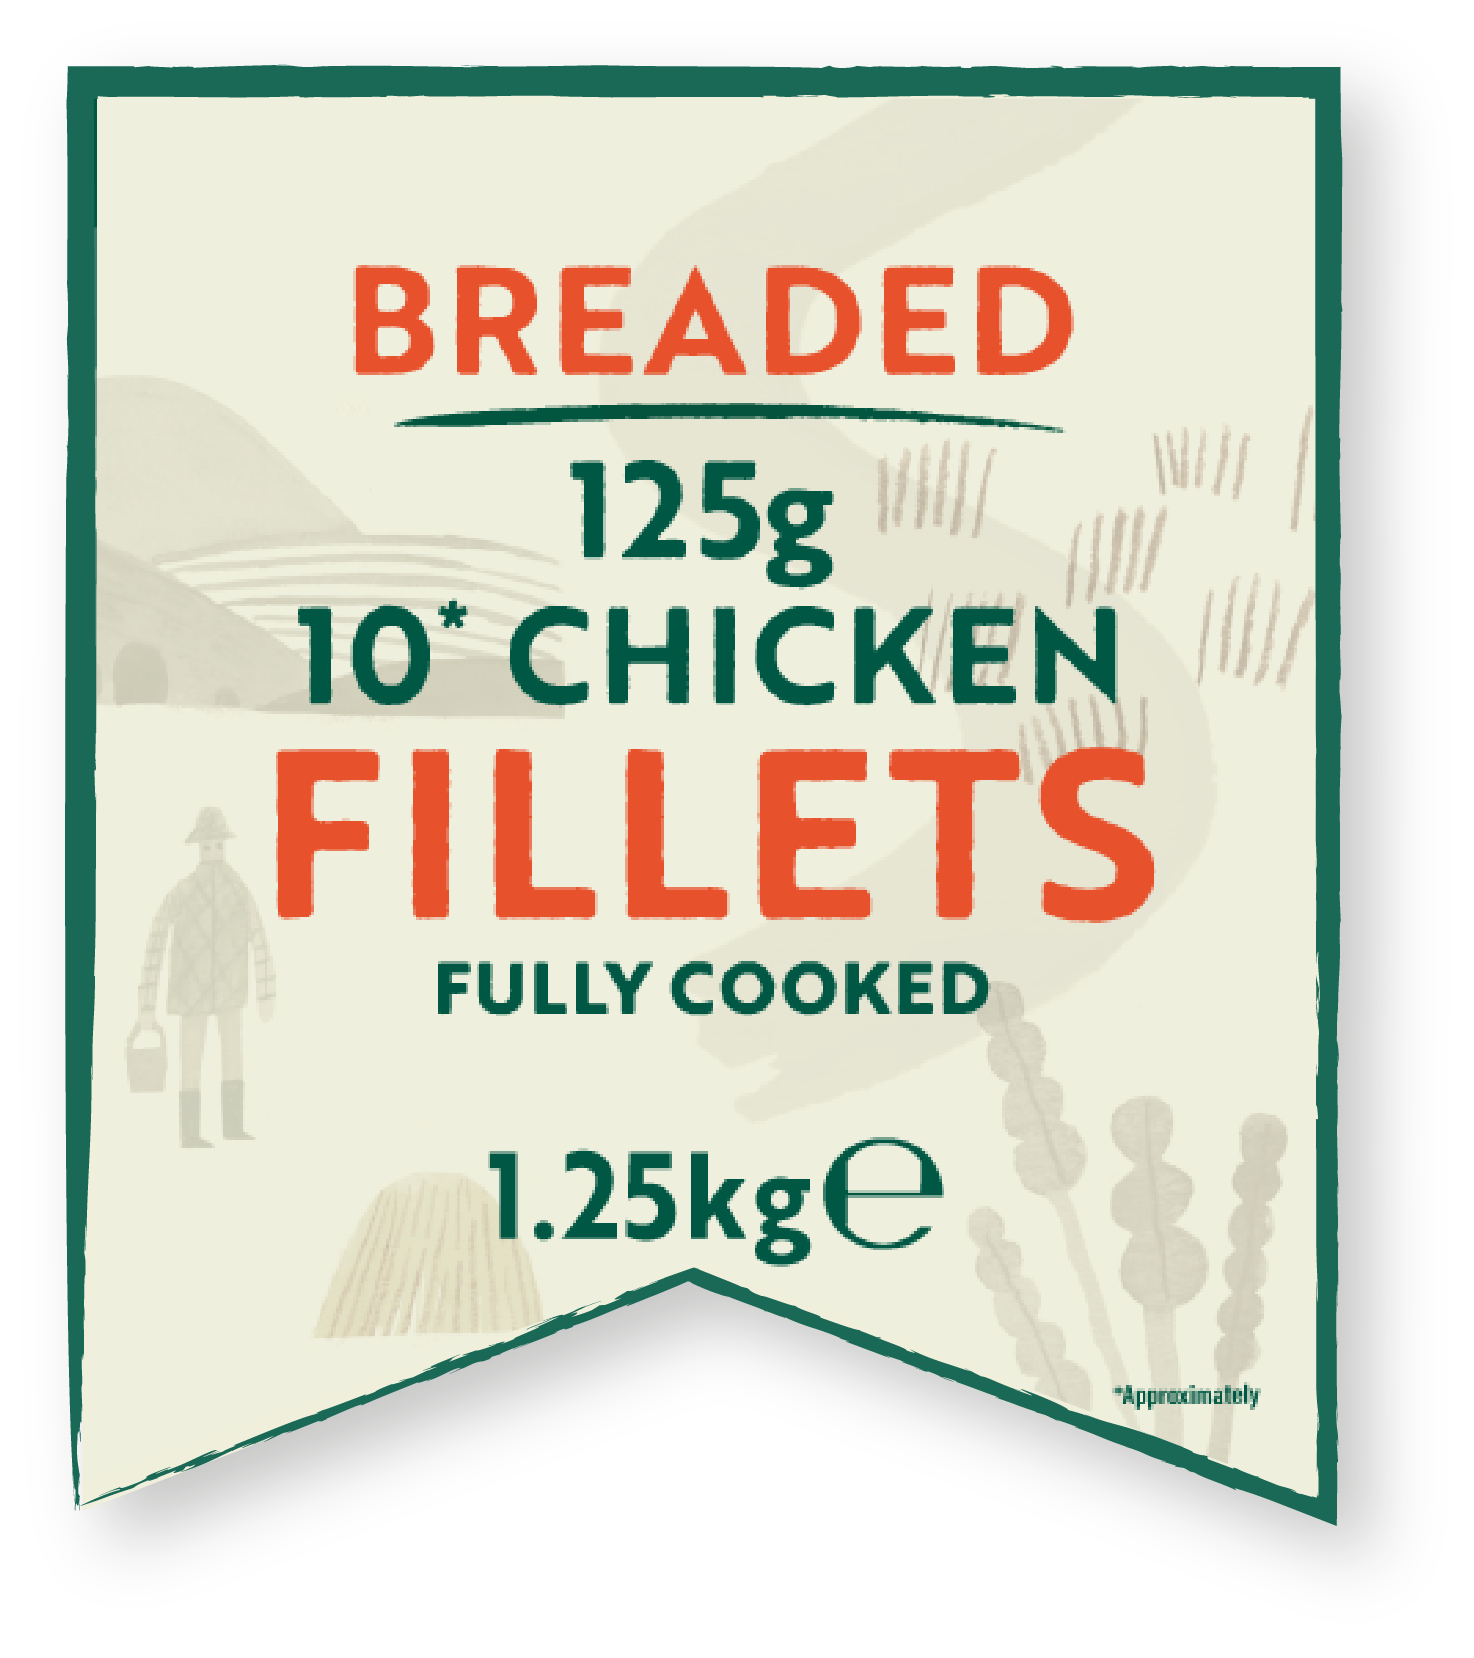 Breaded chicken fillets